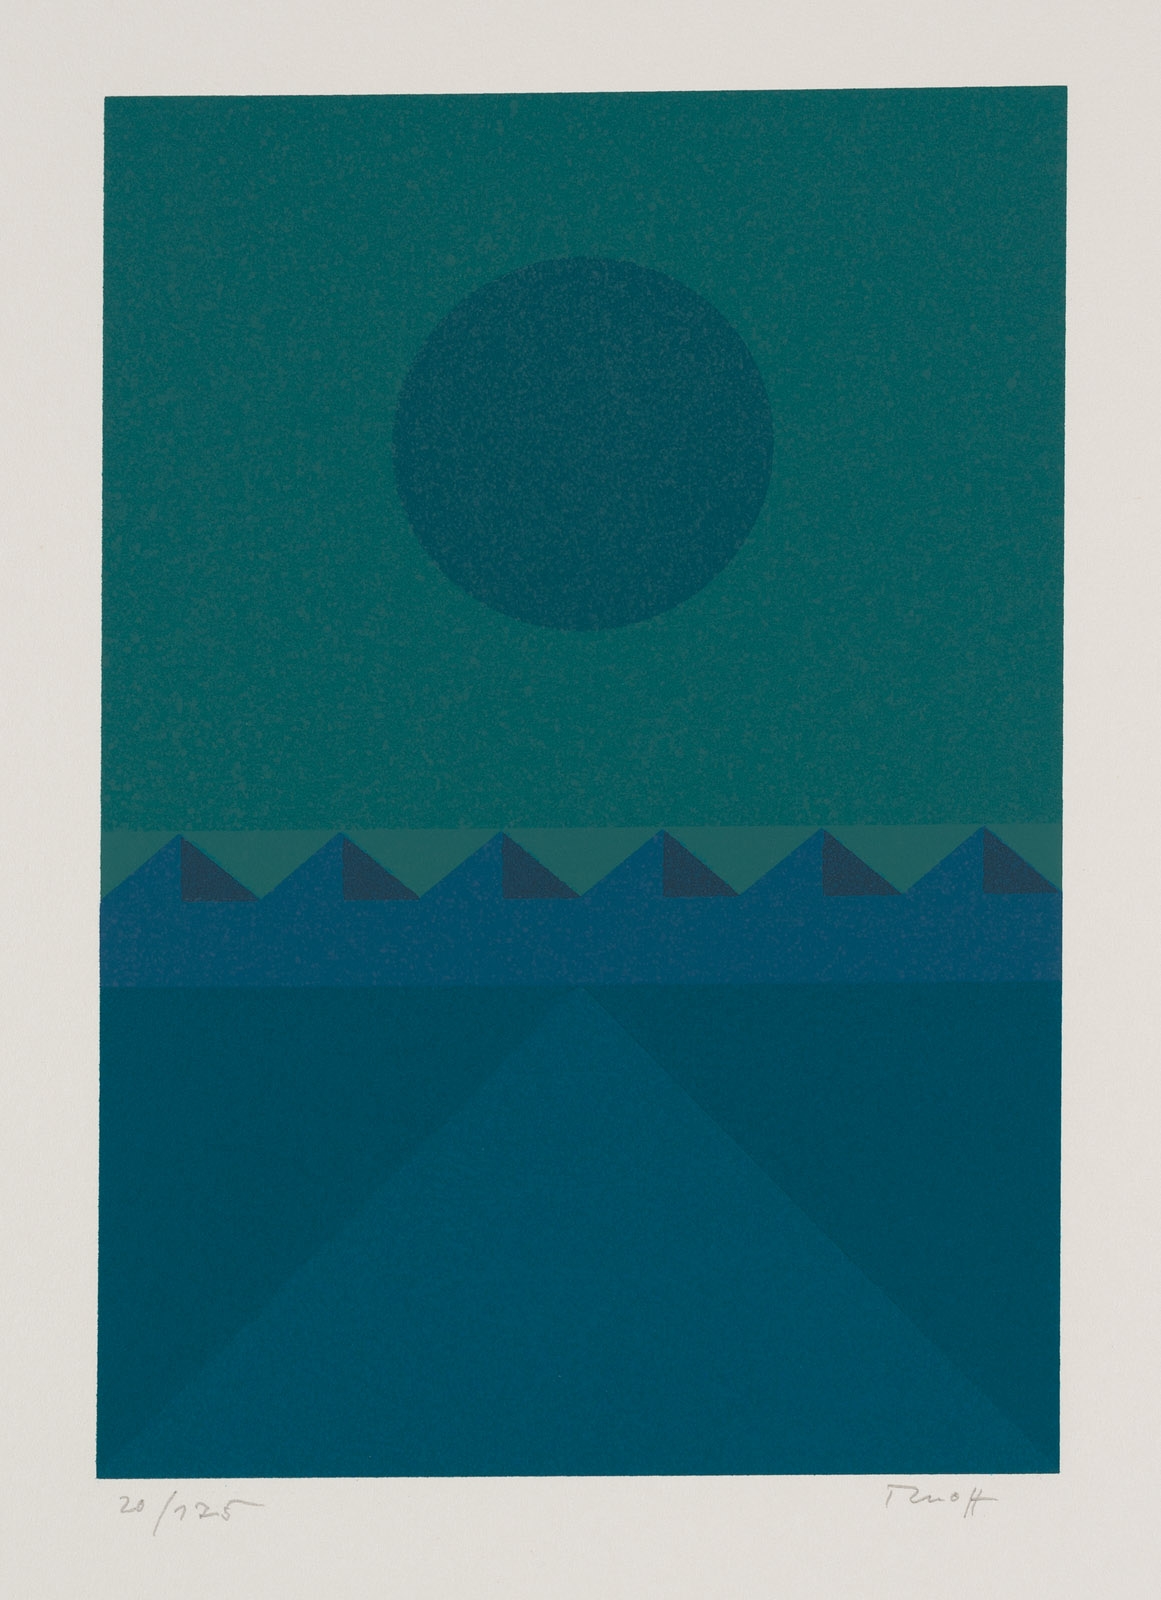 Geometrische Landschaft I - III by Fritz Ruoff, 1974/1978